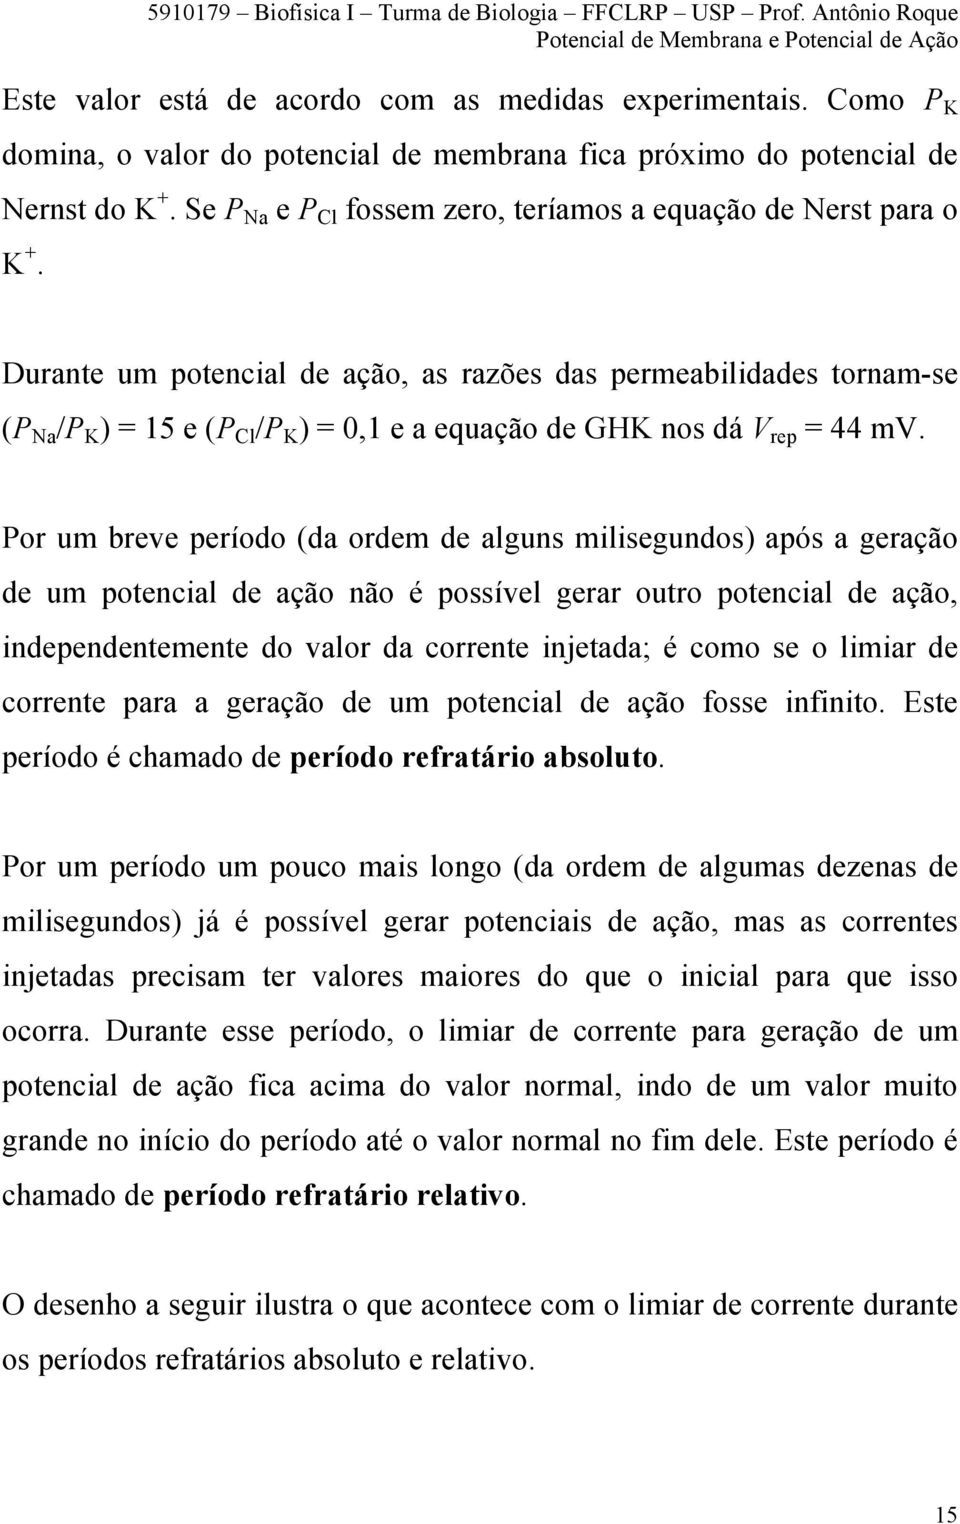 Durante um potencial de ação, as razões das permeabilidades tornam-se (P Na /P K ) = 15 e (P Cl /P K ) = 0,1 e a equação de GHK nos dá V rep = 44 mv.